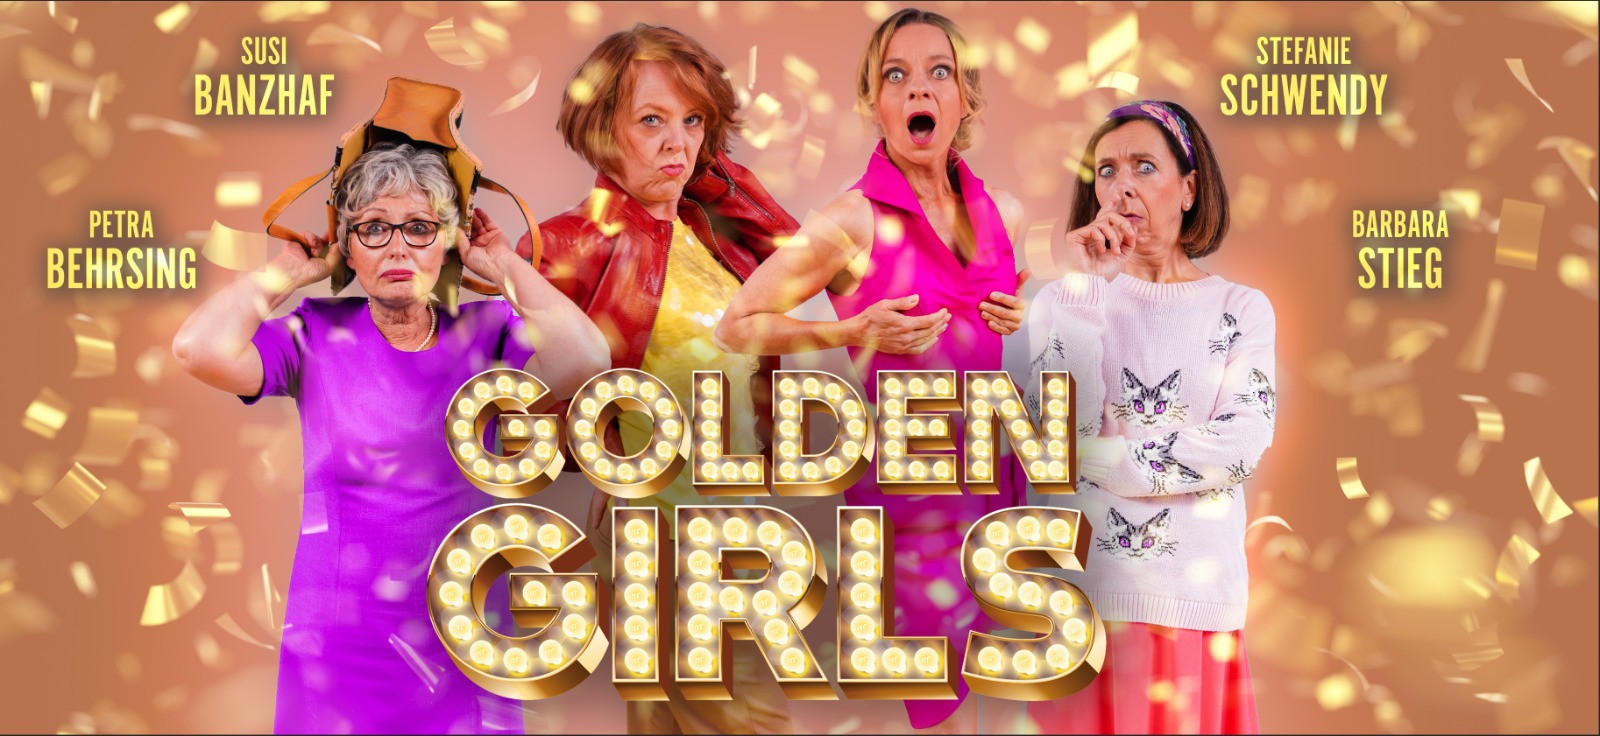 Golden Girls das kleine hoftheater